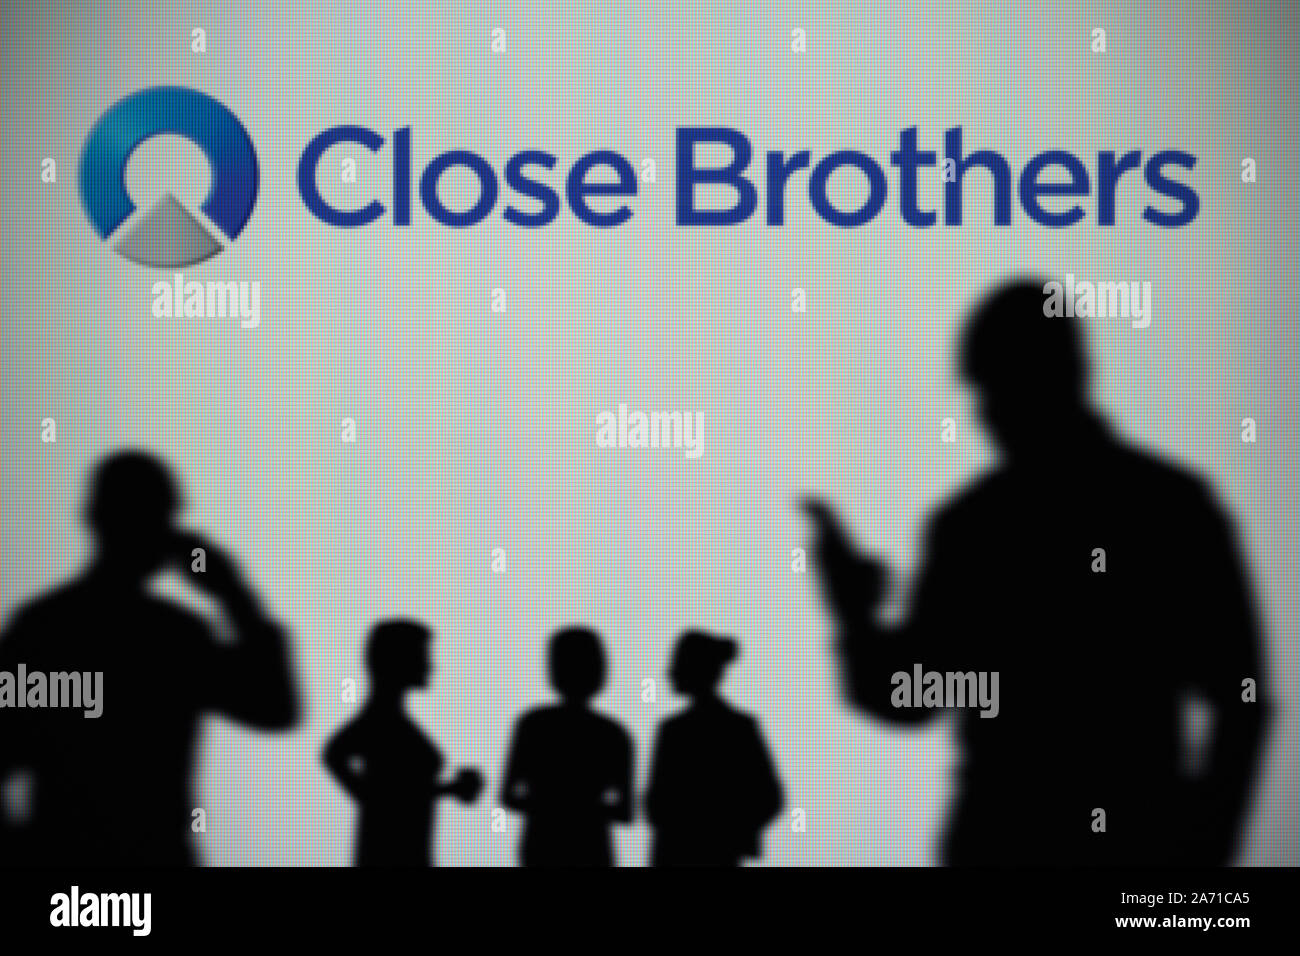 Die Close Brothers Group Logo ist auf einen LED-Bildschirm im Hintergrund, während eine Silhouette Person ein Smartphone verwendet (nur redaktionelle Nutzung) Stockfoto